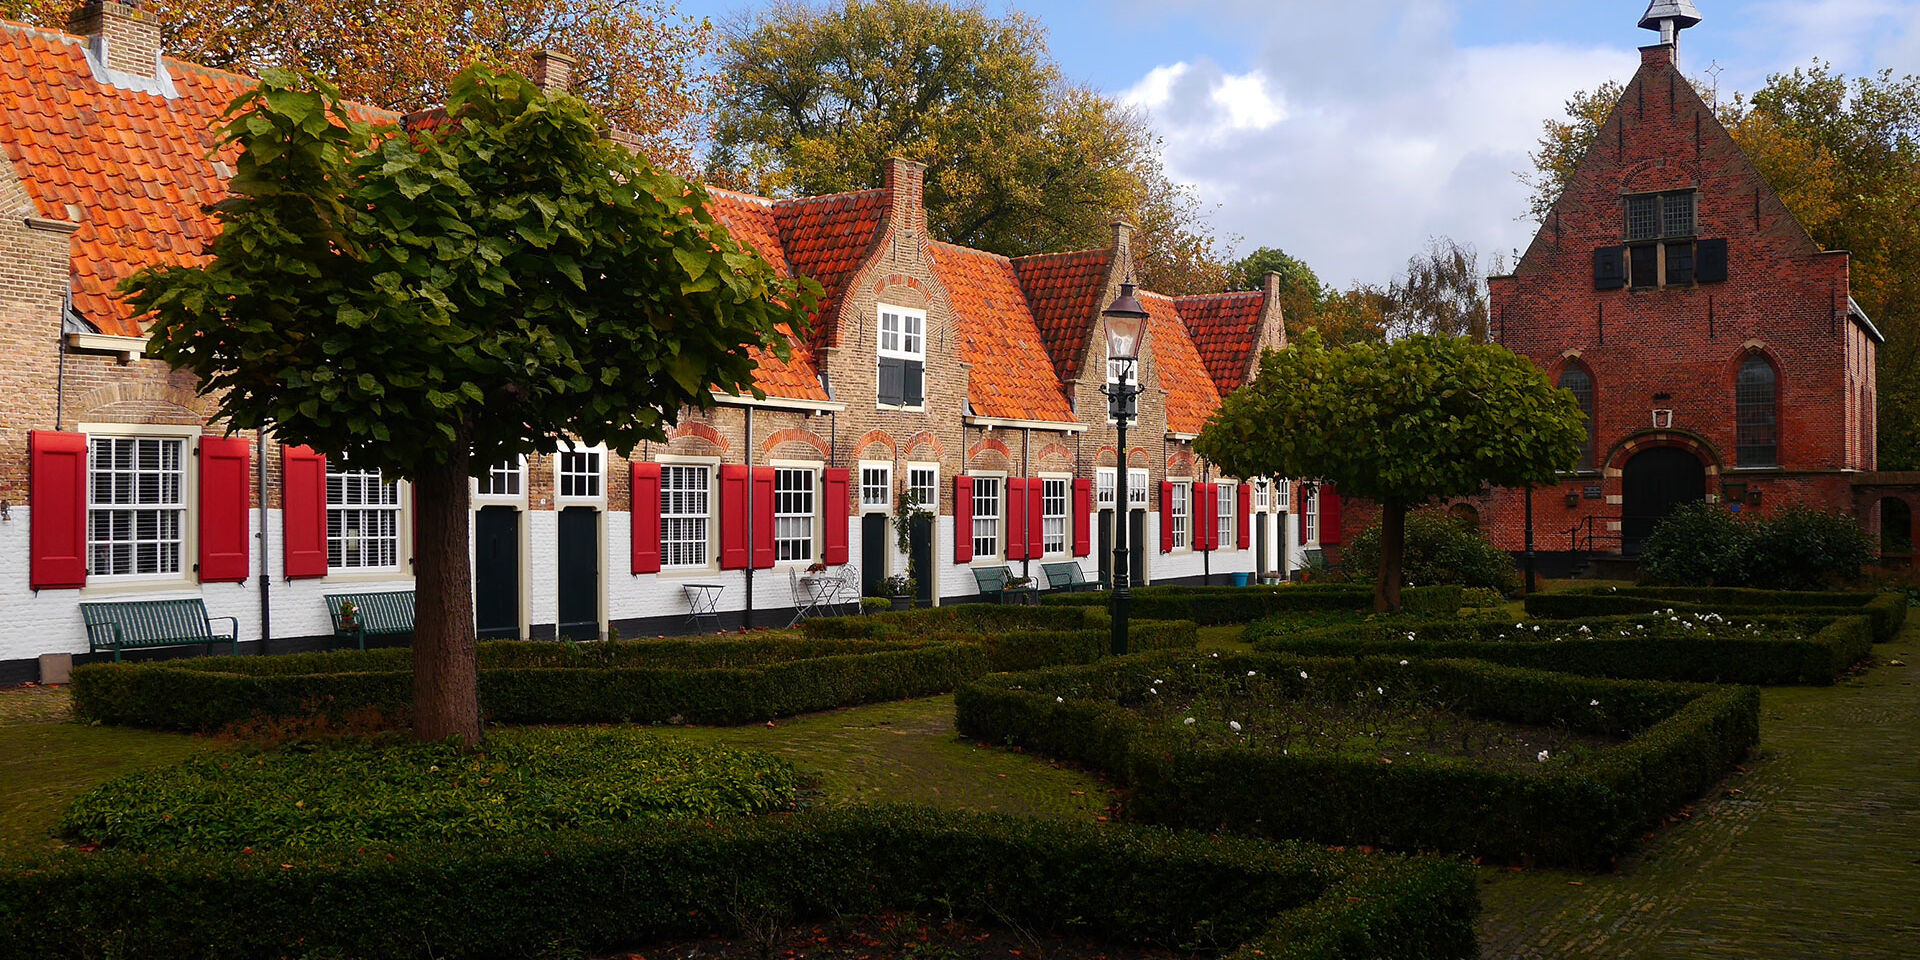 Oude huisjes met oranje dakpannen en rode luiken in het Heilige Geesthofje in Naaldwijk in het Westland